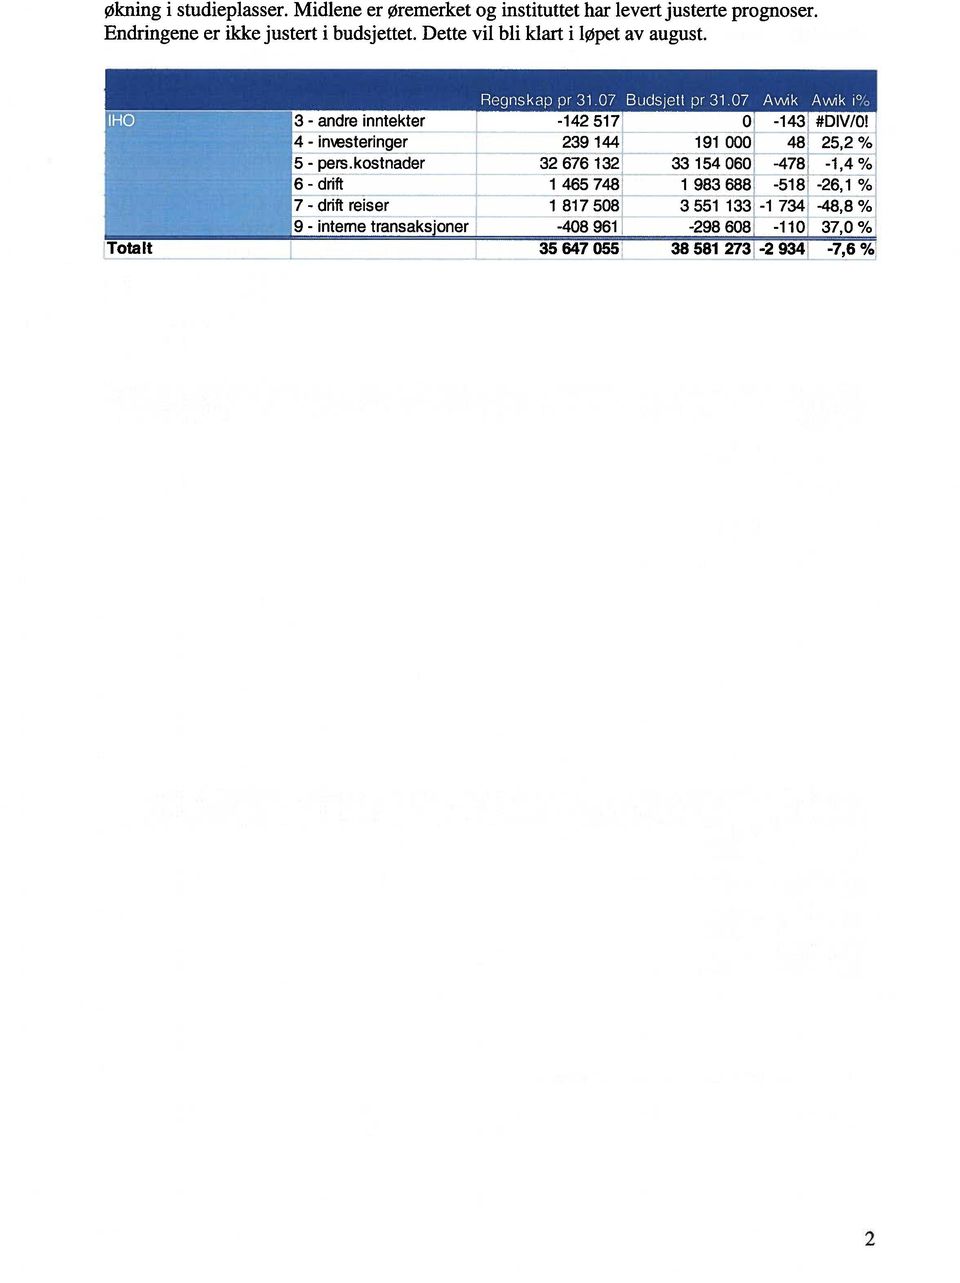 kostnader 3 - drift :7 - drift reiser - interne transaksjoner Regnskap pr 31.07 Budsjett pr 31.07 Awk Awik 1% -142517 0-143 #DIV/0!